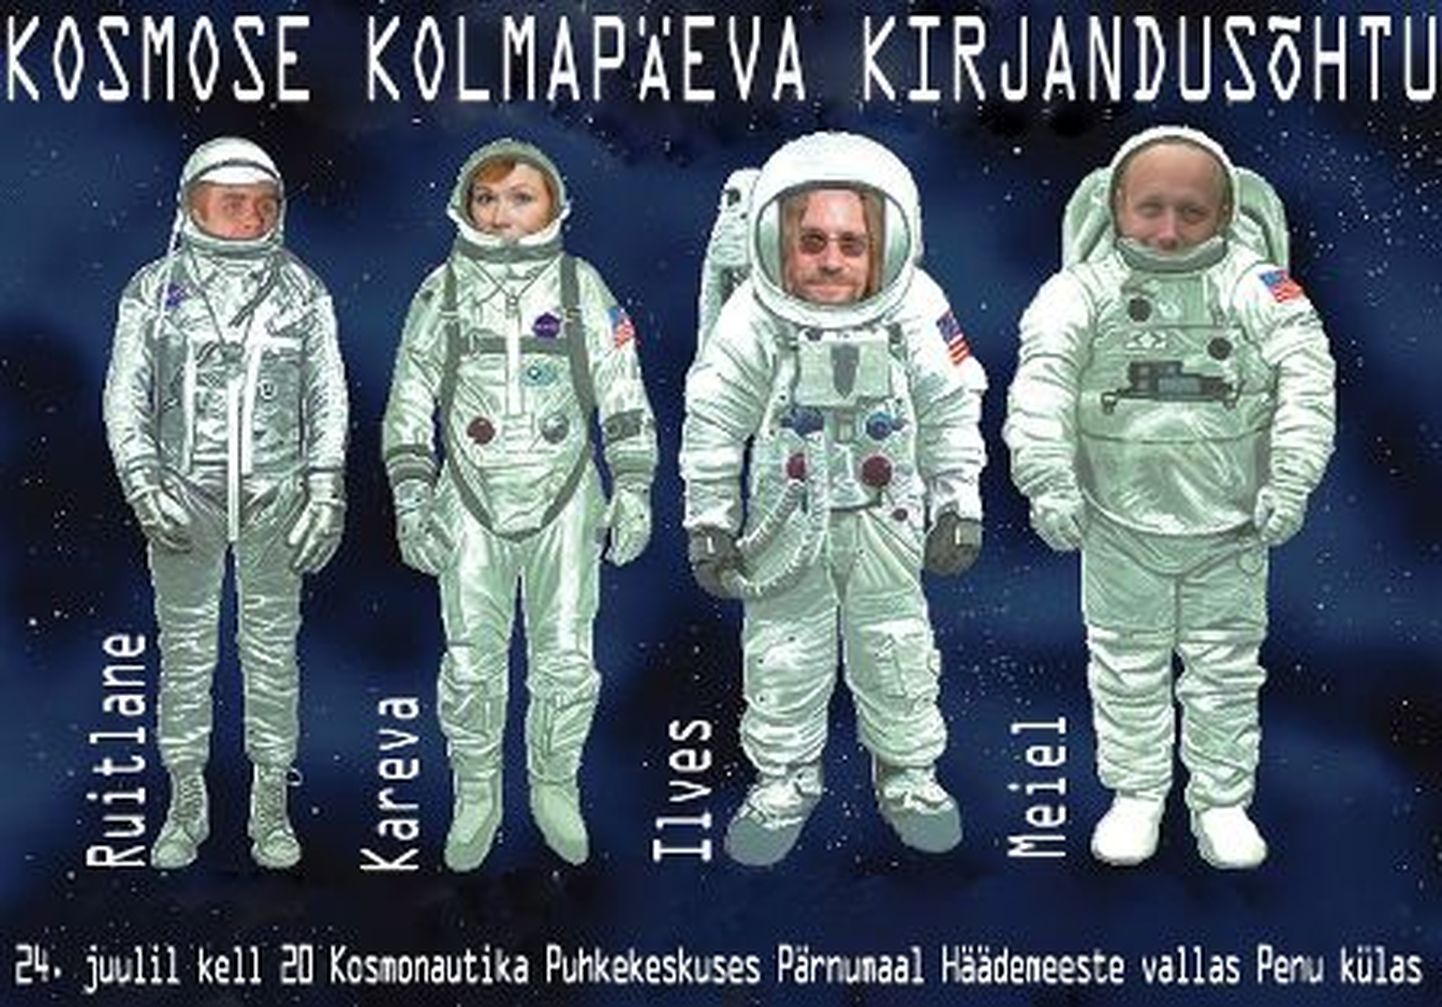 Häädemeeste vallas Penu külas paiknevas Kosmonautika puhkekeskuses toimub kirjandusõhtu, kus astuvad üles Doris Kareva, Aapo Ilves ja Olavi Ruitlane